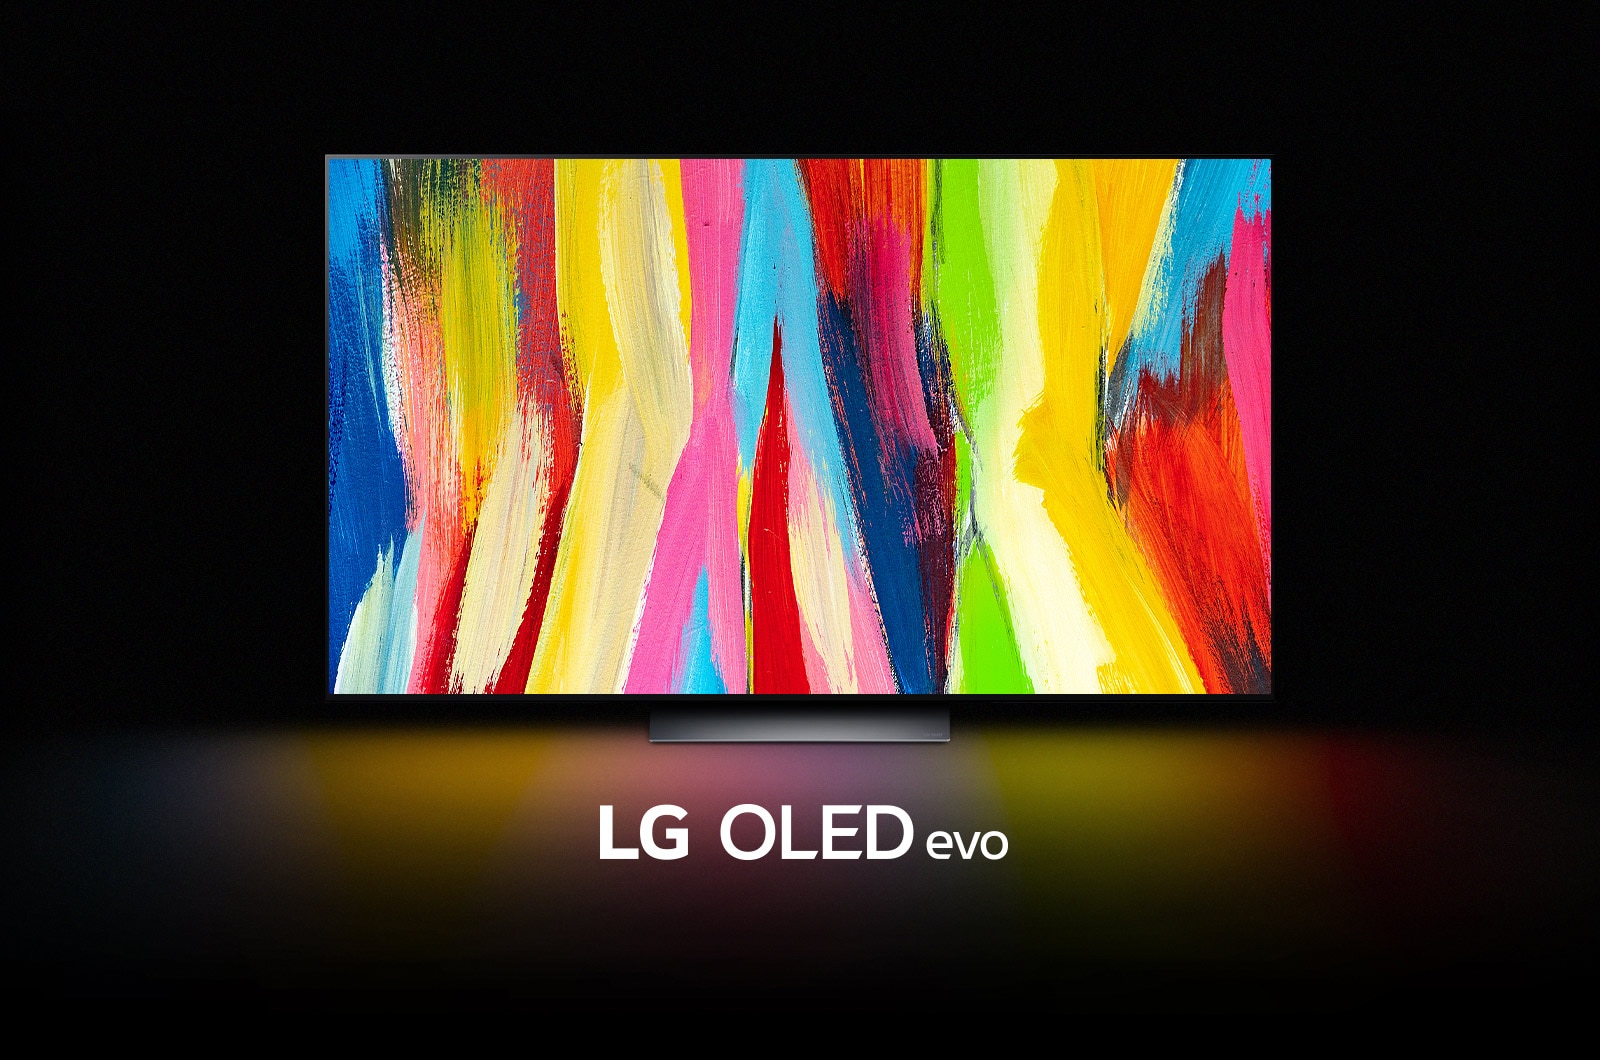 تلفزيون OLED C2 من LG في غرفة مظلمة مع عمل فني تجريدي ملون لخطوط عمودية على شاشته ومكتوب تحتها عبارة "LG OLED evo".